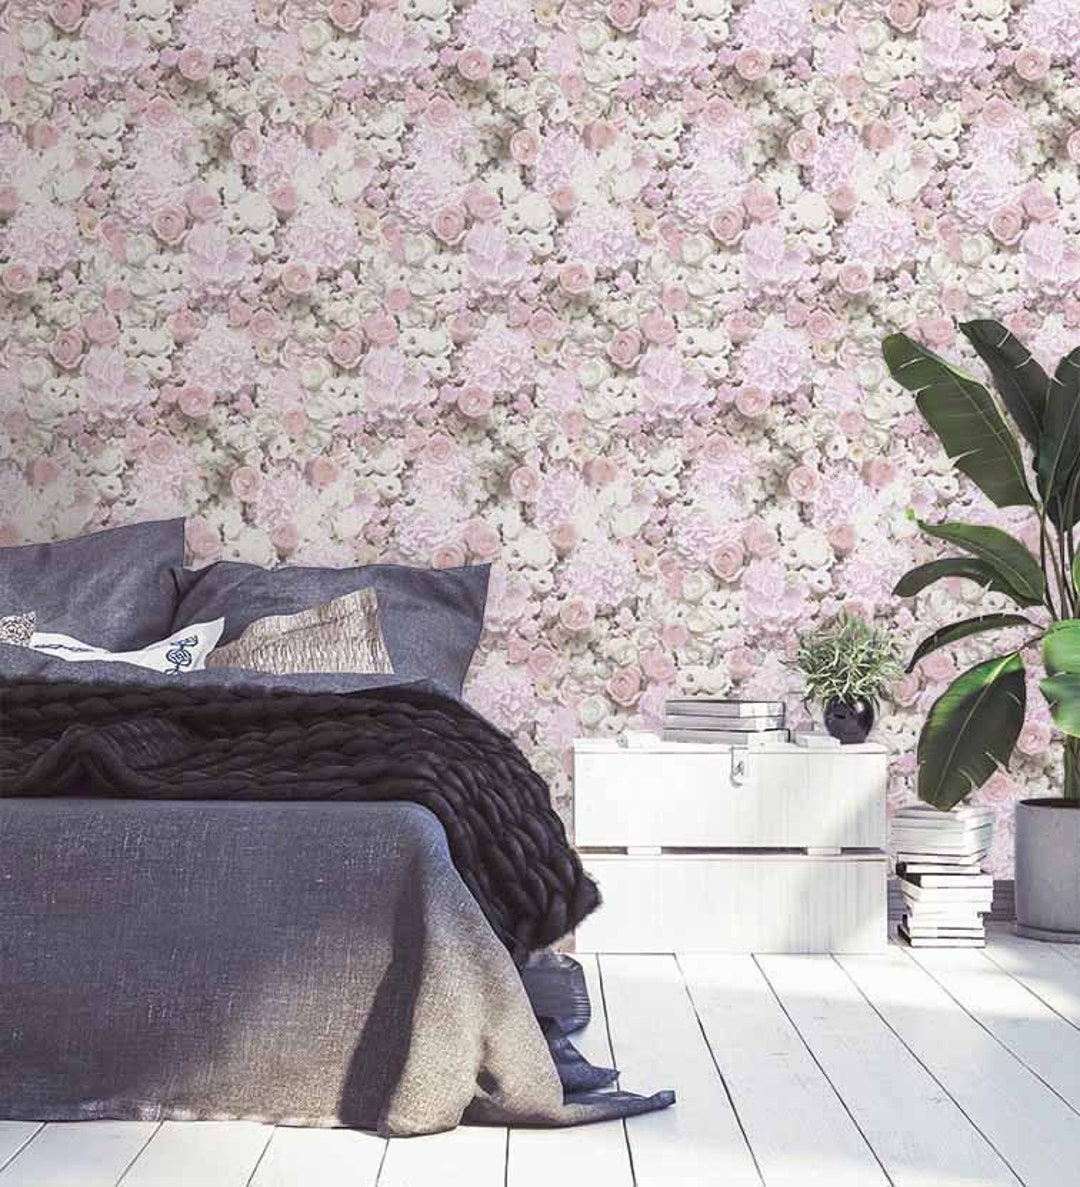 61,518 Bedroom Wallpaper Images, Stock Photos & Vectors | Shutterstock